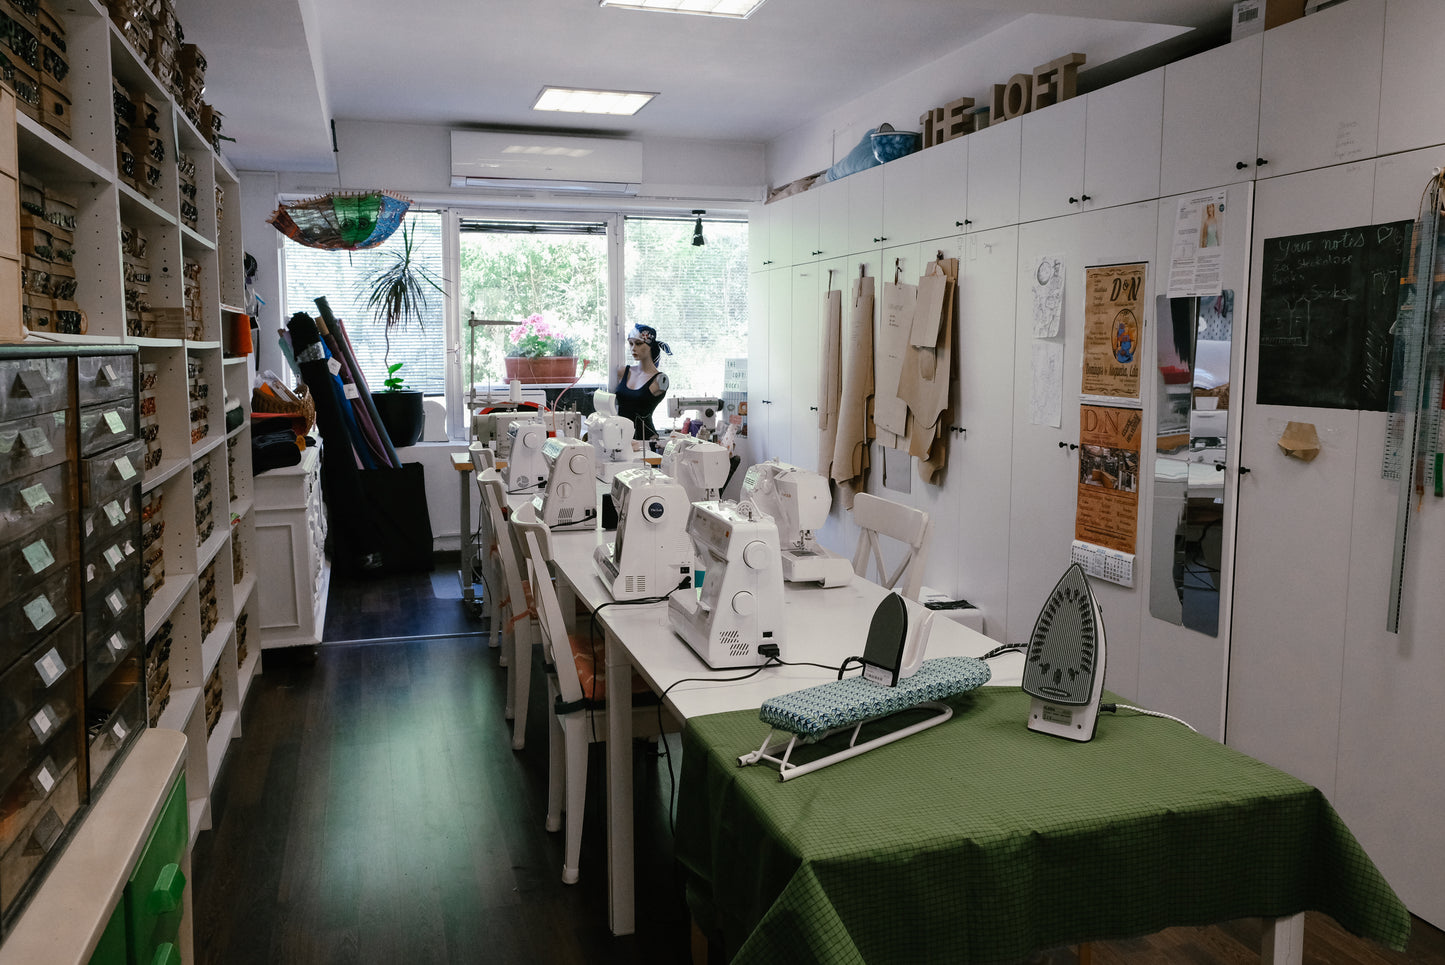 Sewing Starter Workshop (3,5 Hours)